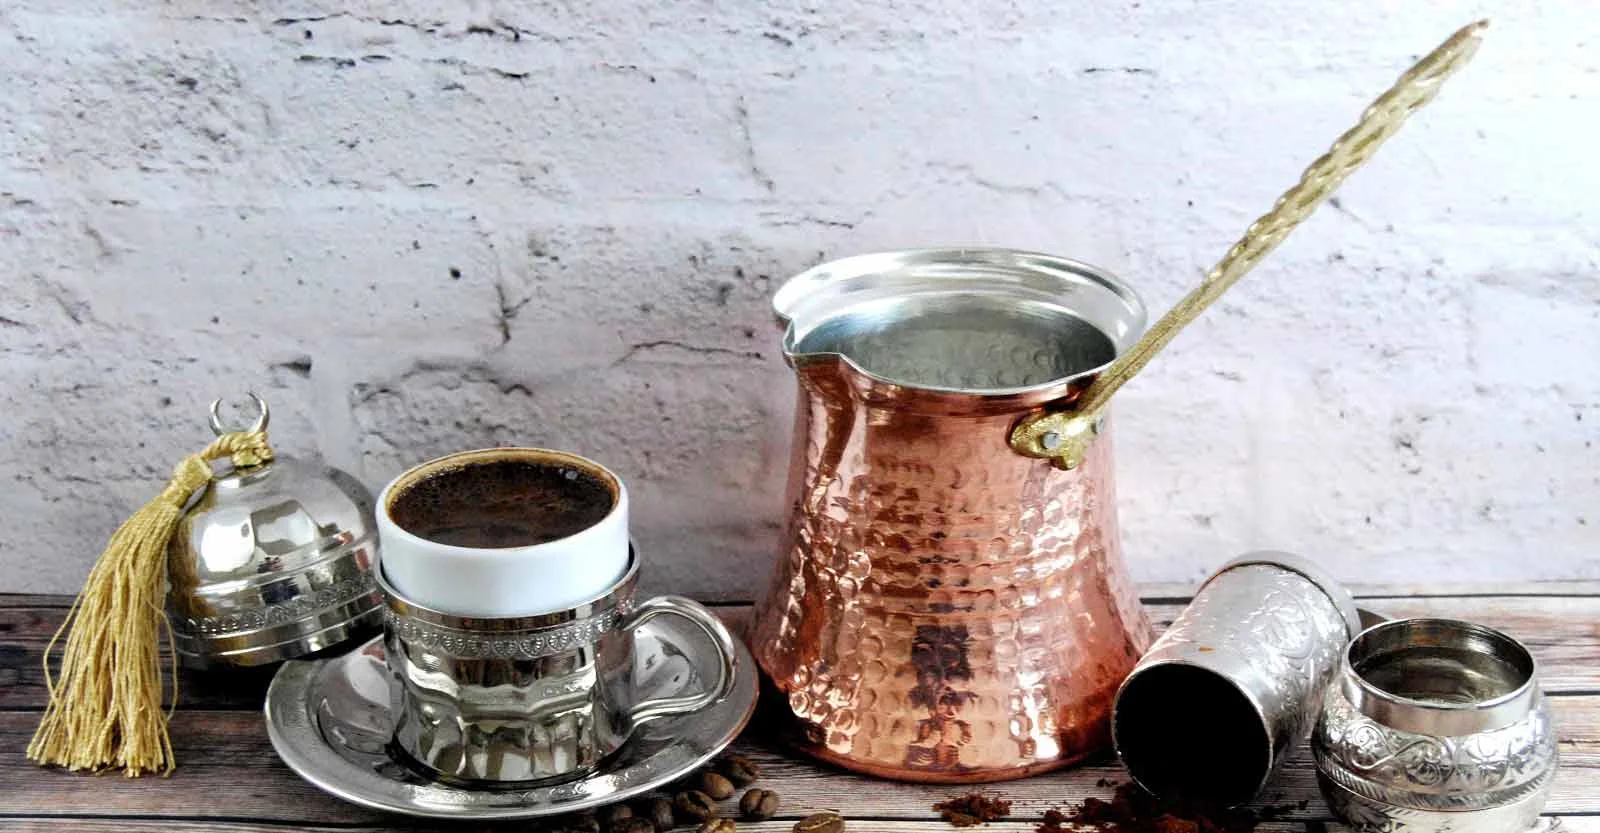 قهوه جوش ترک مسی که در کنار یک لیوان قهوه قرار گرفته است.